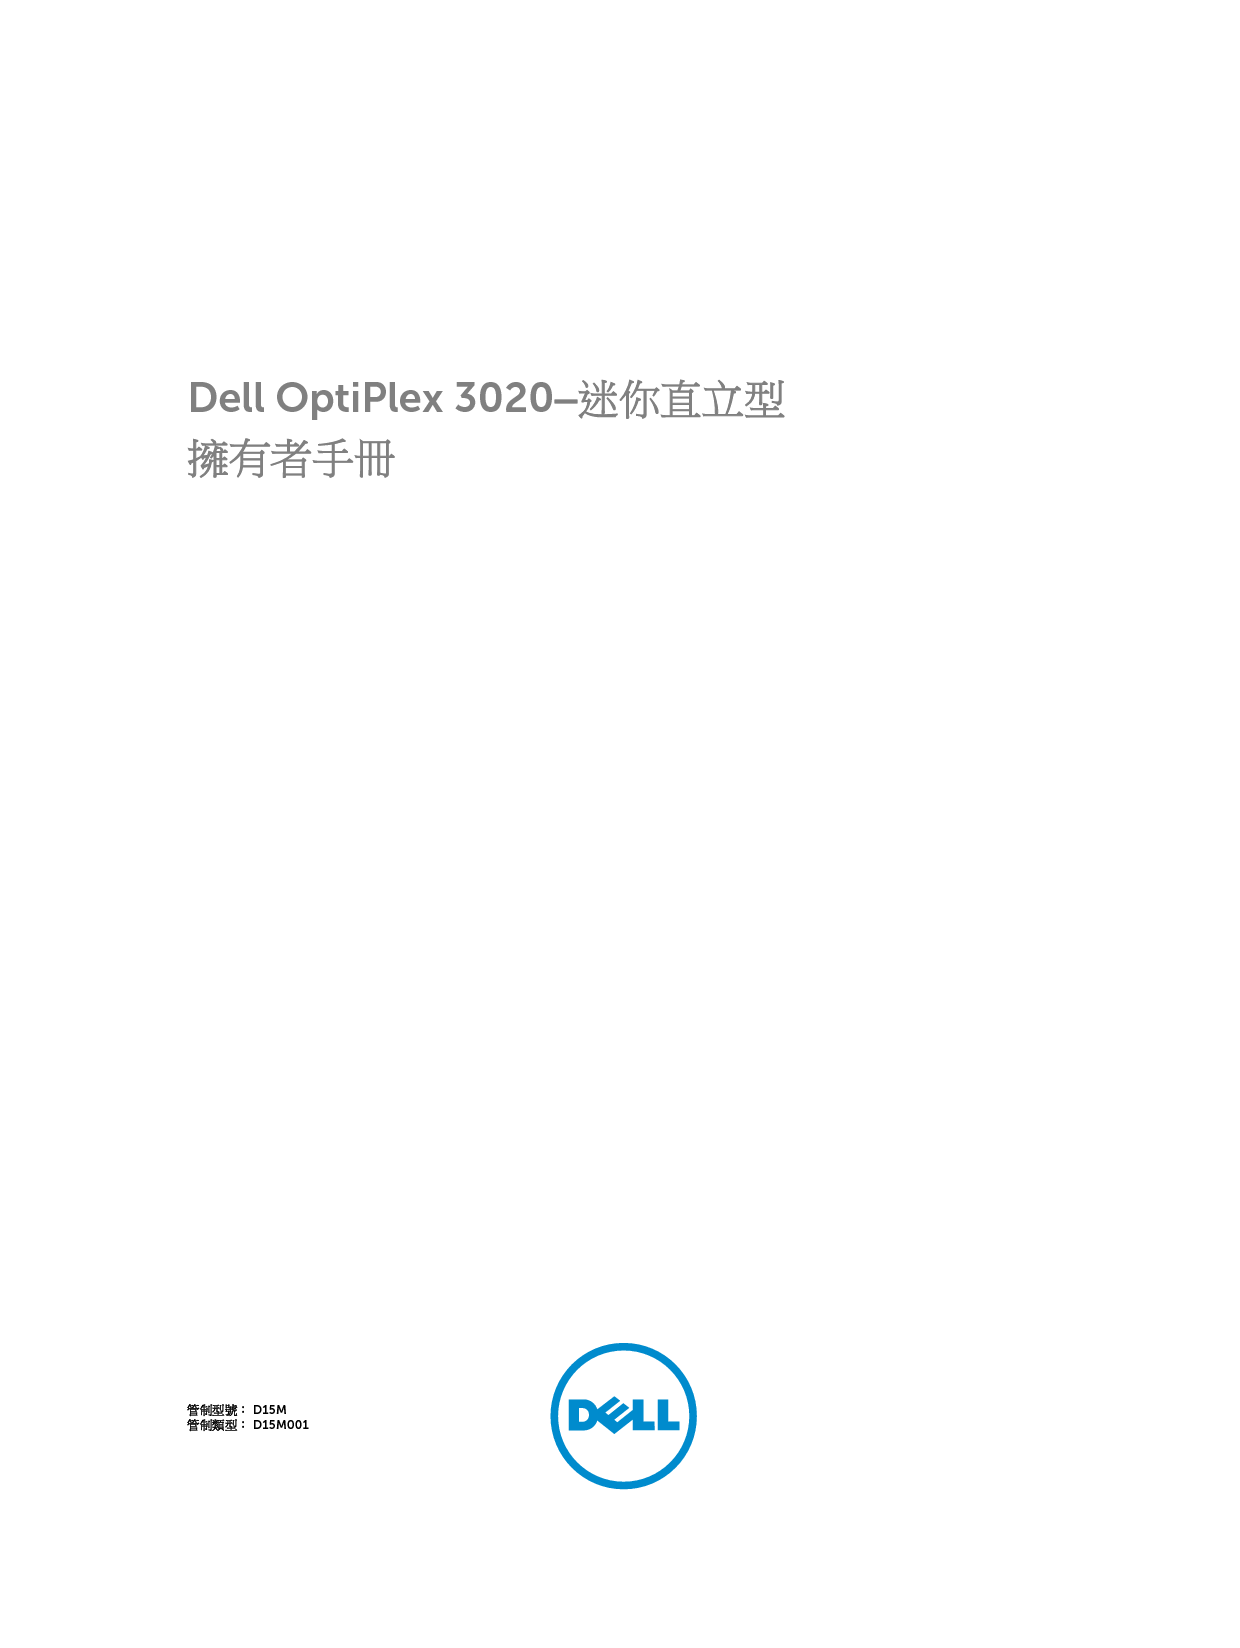 戴尔 Dell Optiplex 3020 小型塔式 繁体 用户手册 封面